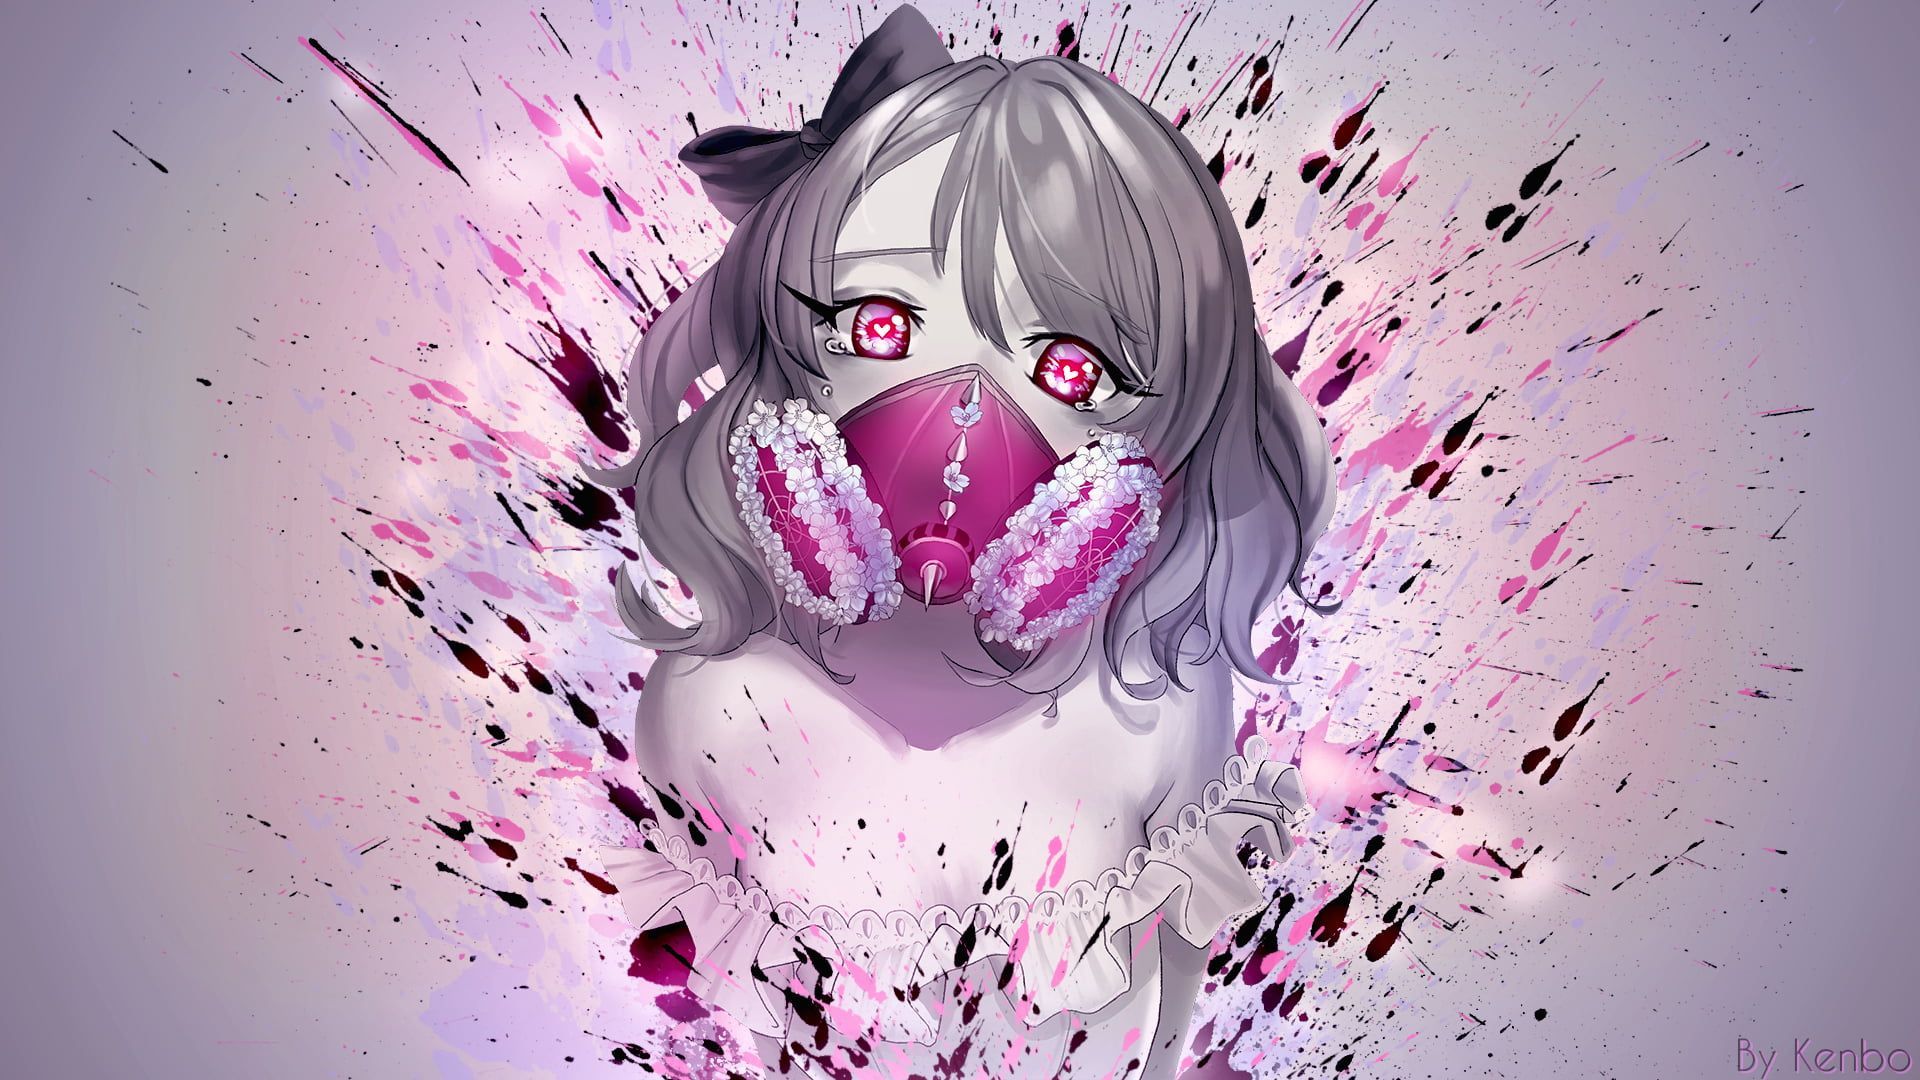 HD wallpaper: anime, anime girls, gas masks, splatter, paint splatter, pink